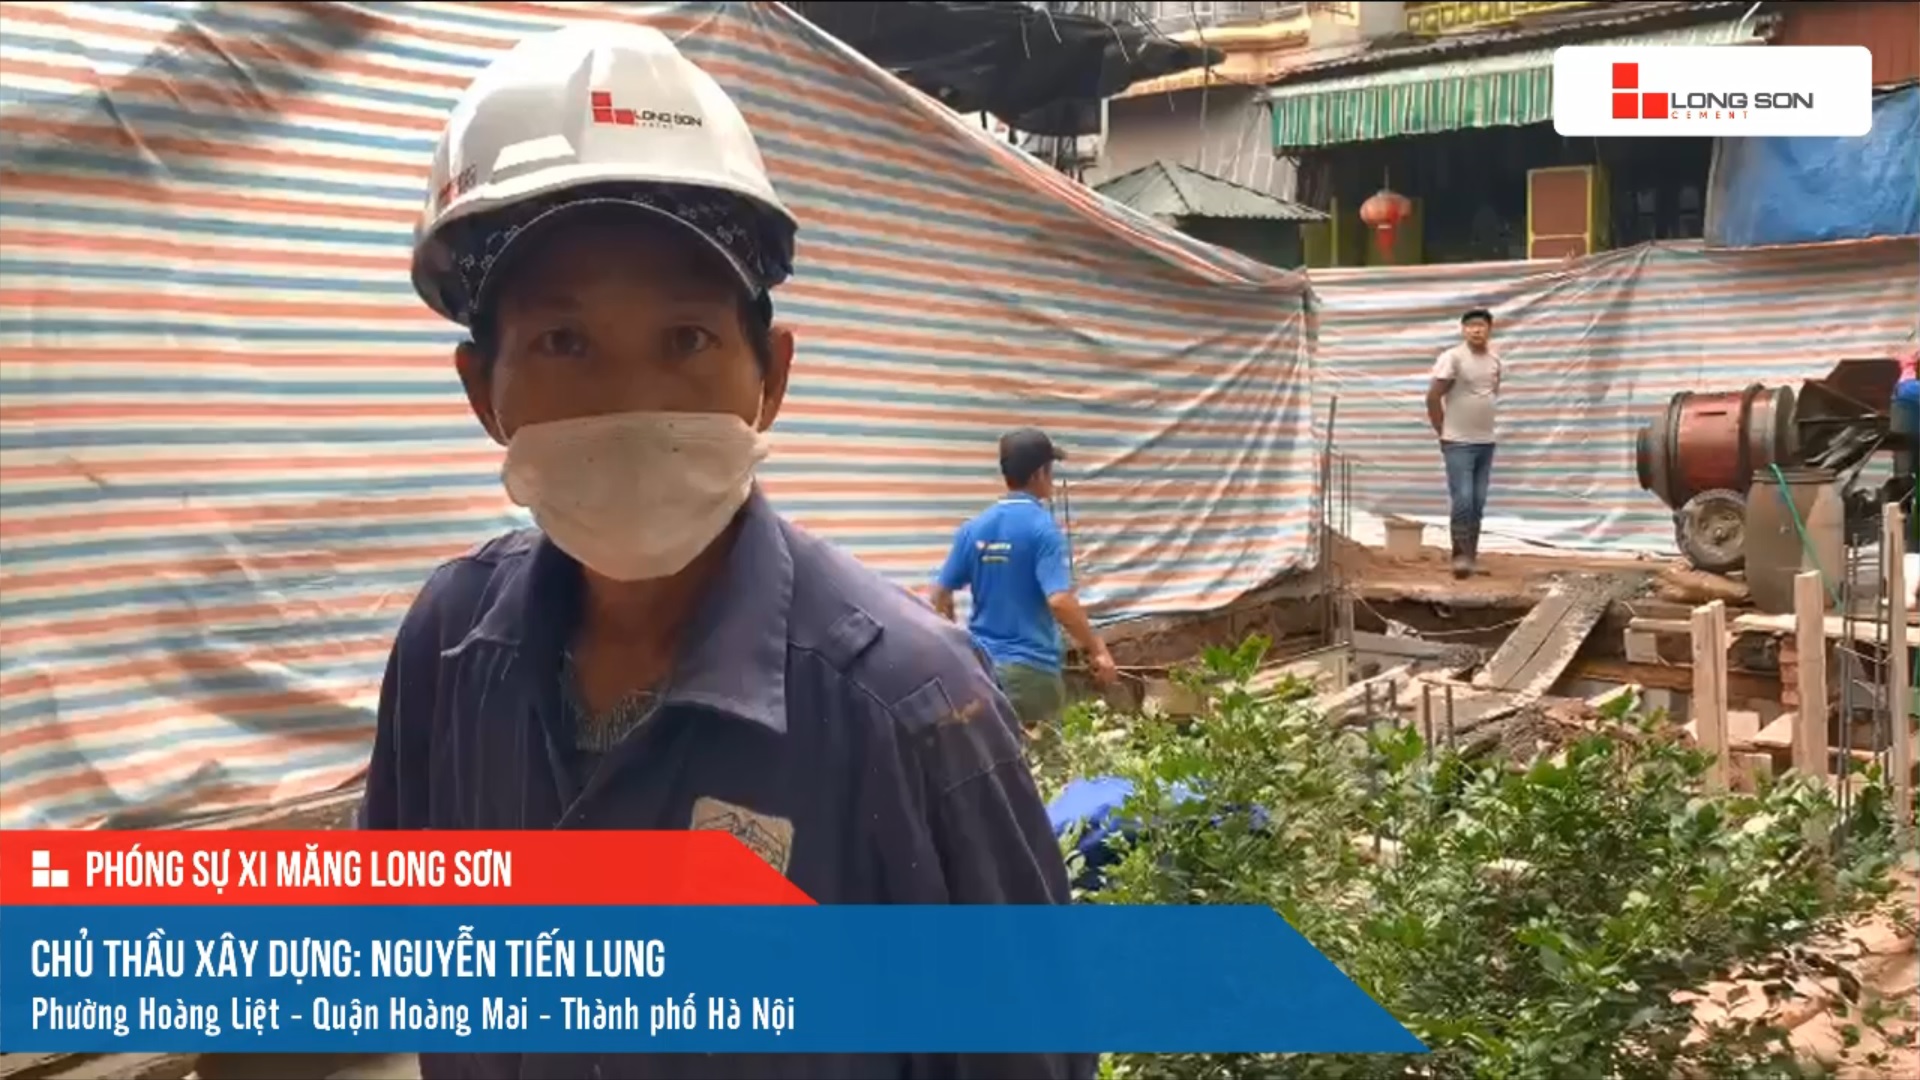 Phóng sự công trình sử dụng xi măng Long Sơn tại Hà Nội ngày 10/12/2021